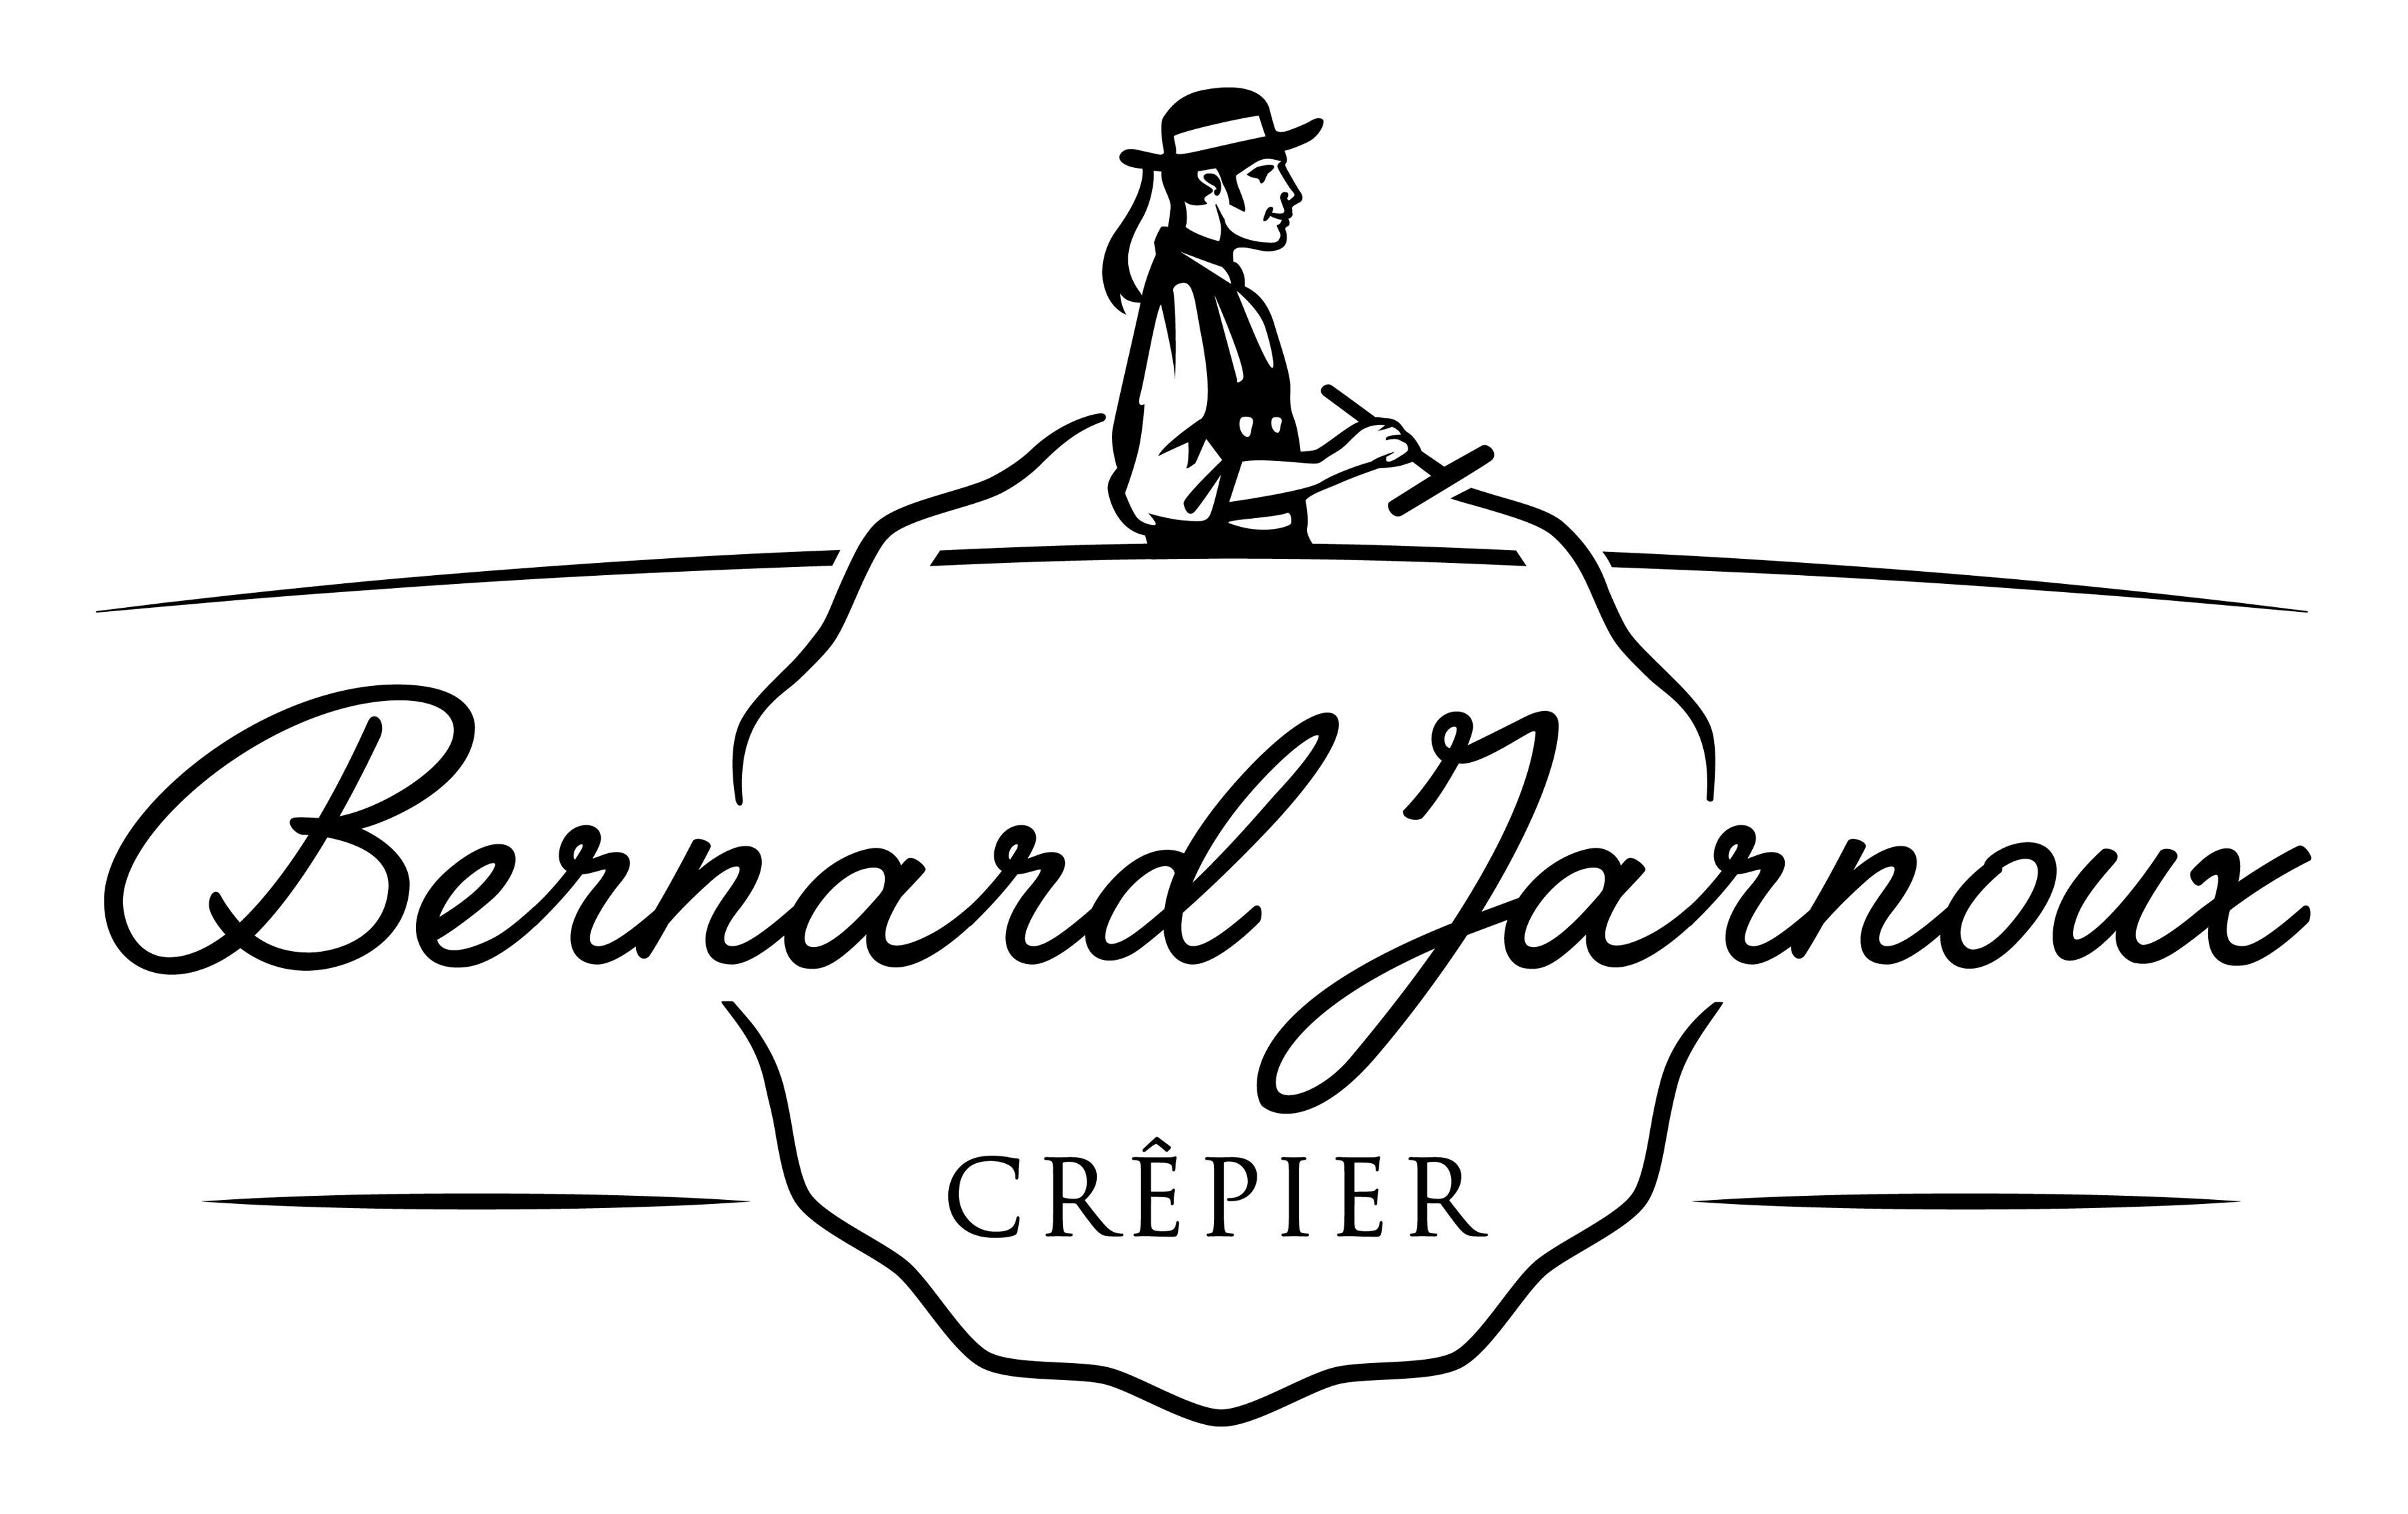 Bernard Jarnoux Crêpier